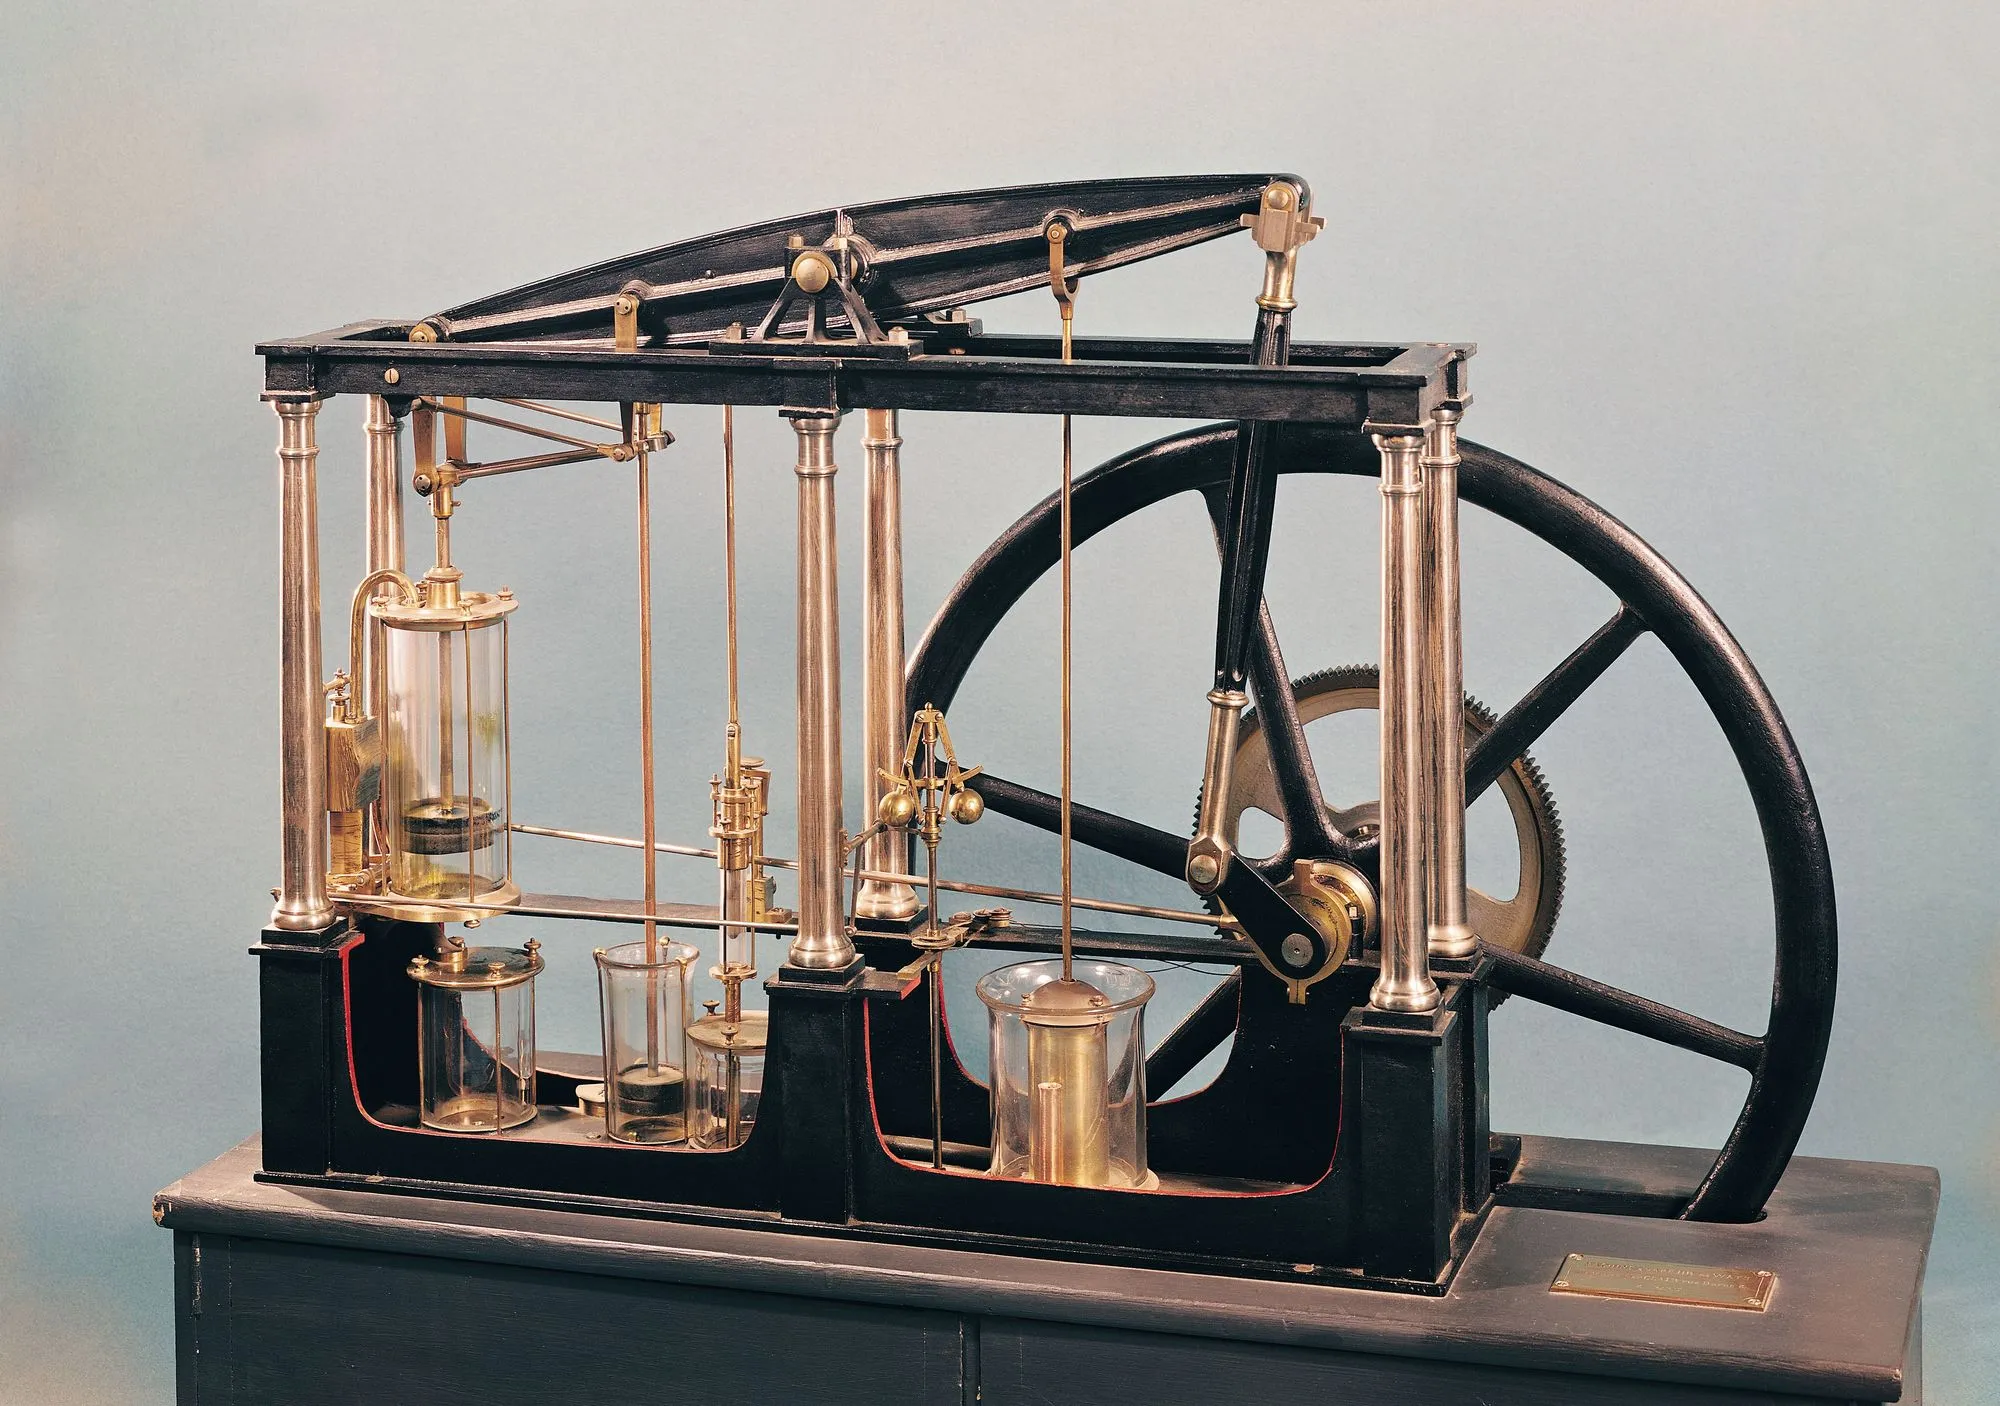 Une reconstitution de la machine à vapeur de James Watt, qui a été une innovation majeure et a permis la révolution industrielle